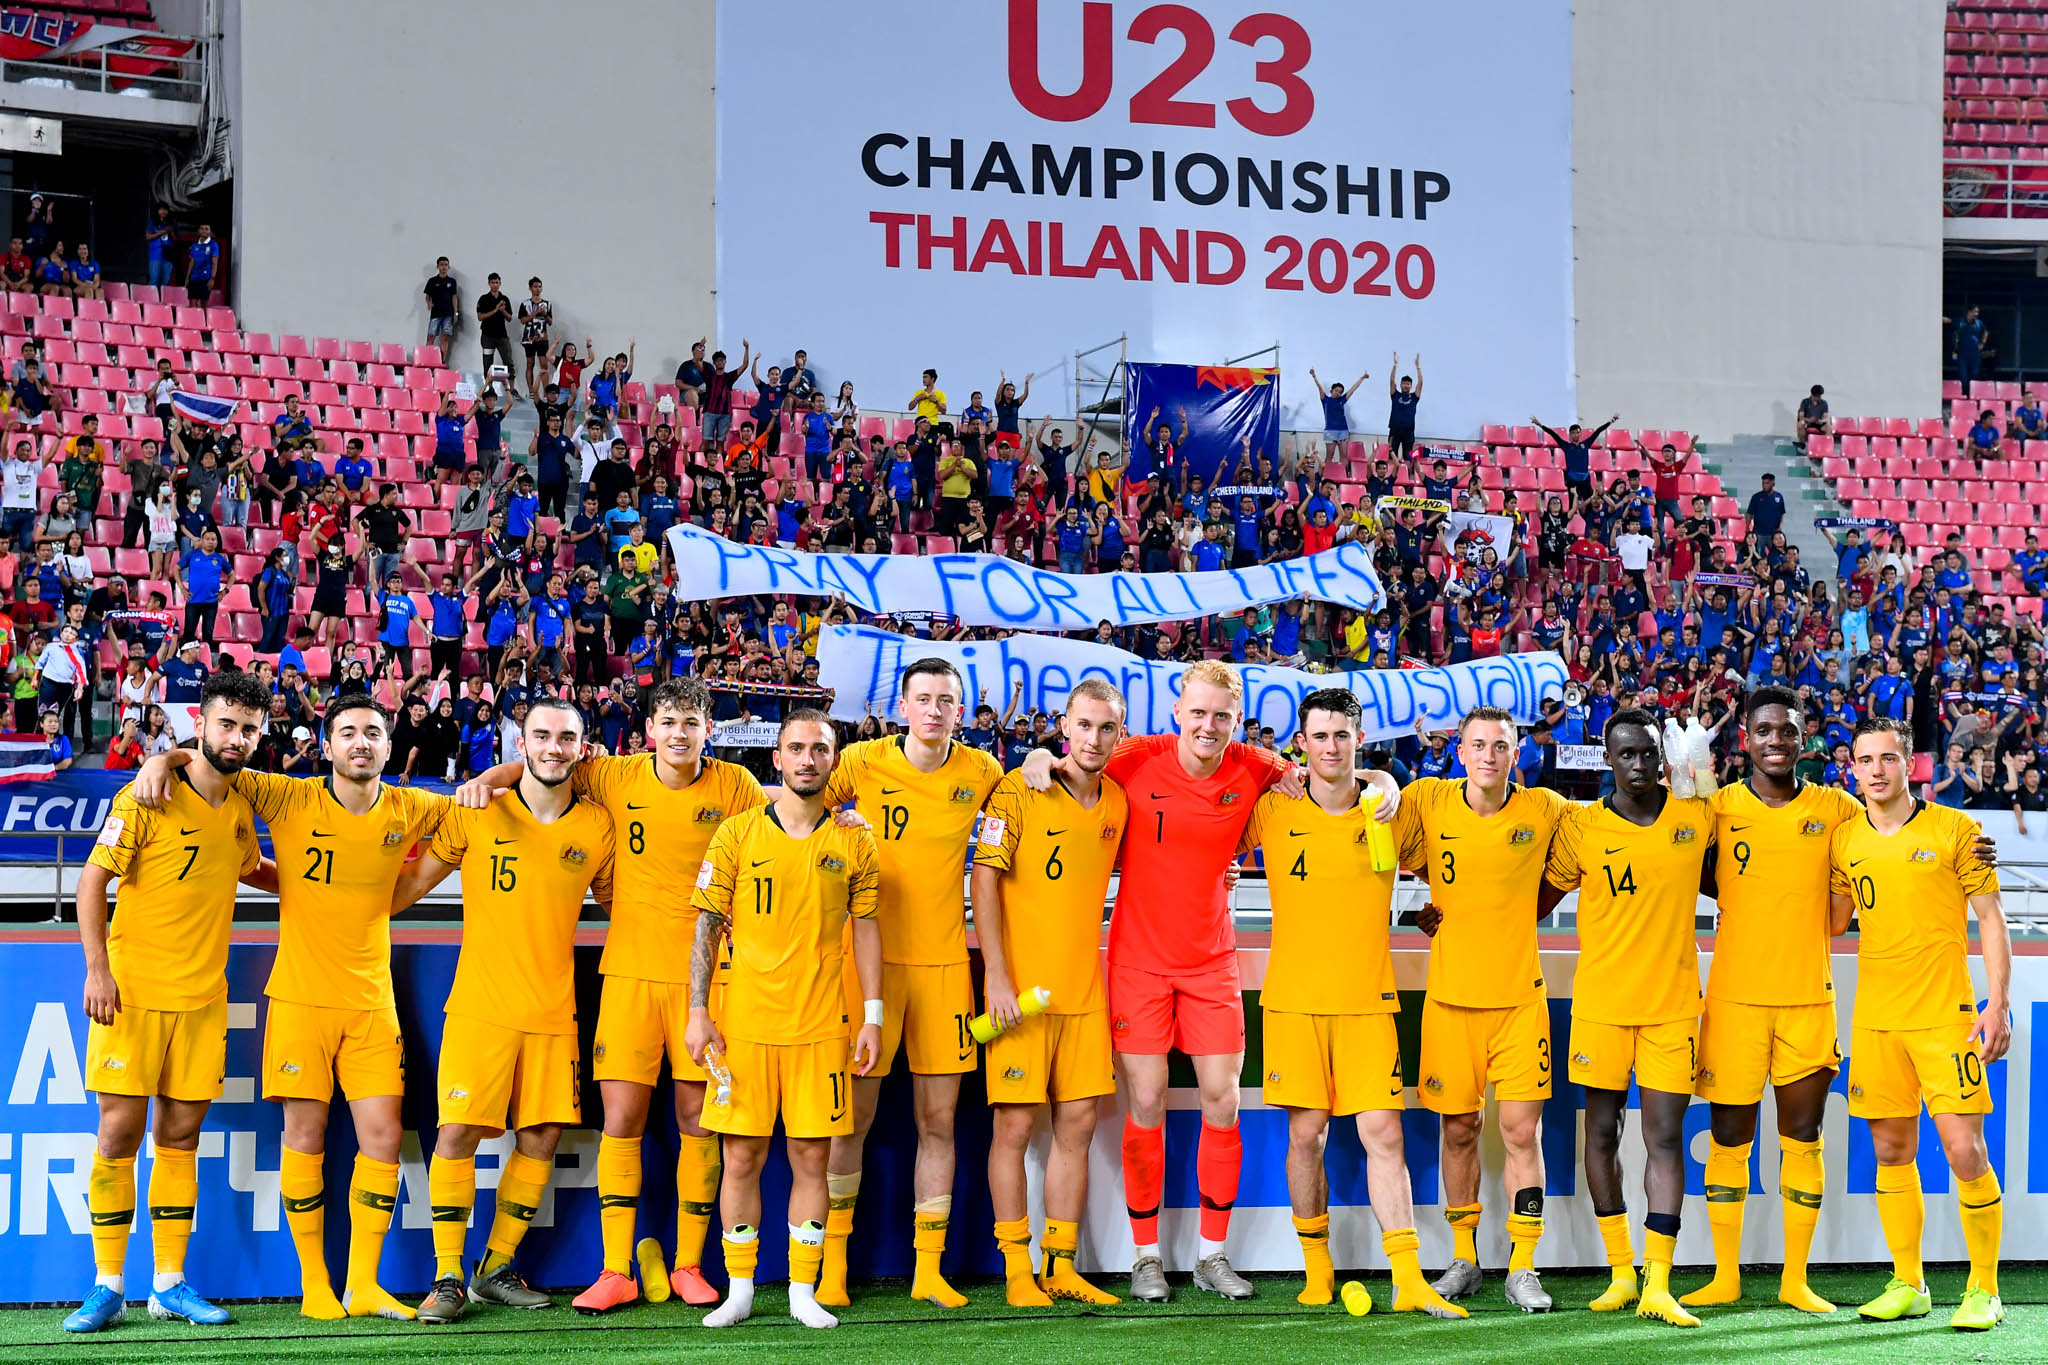 Thai fans banner